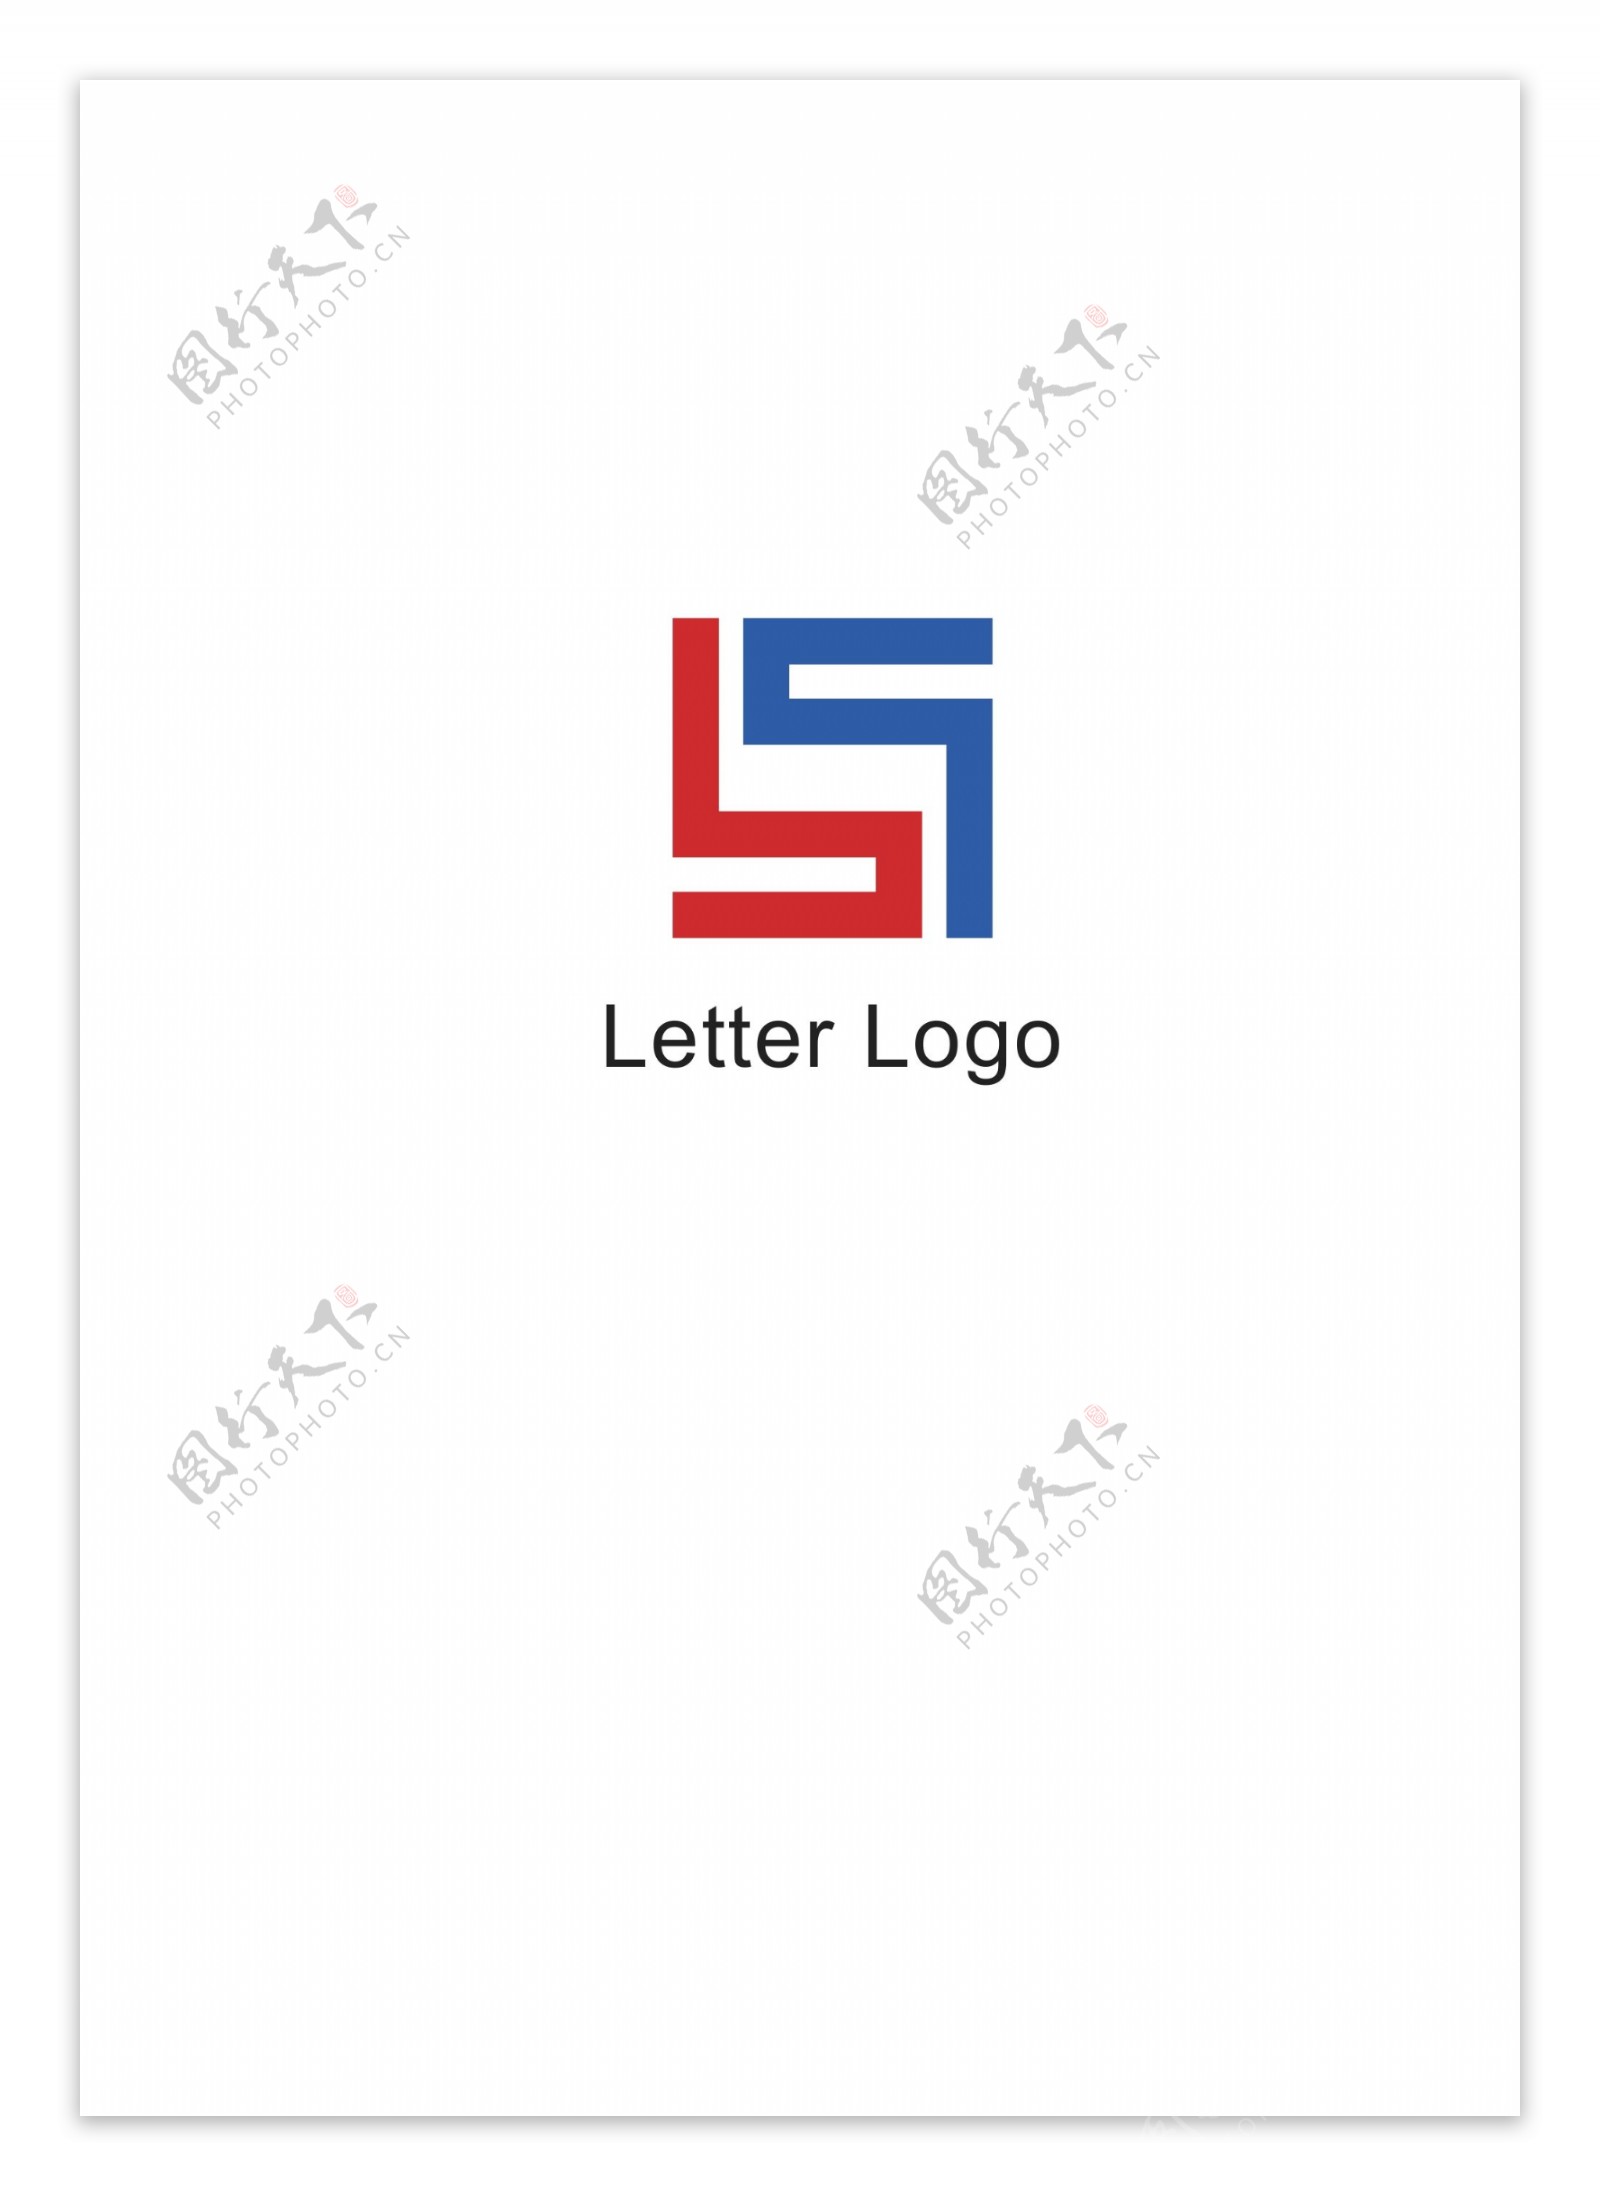 卡通手繪字母logo向量圖, S字母logo設計, 字母logo, 卡通手繪向量圖案素材免費下載，PNG，EPS和AI素材下載 - Pngtree